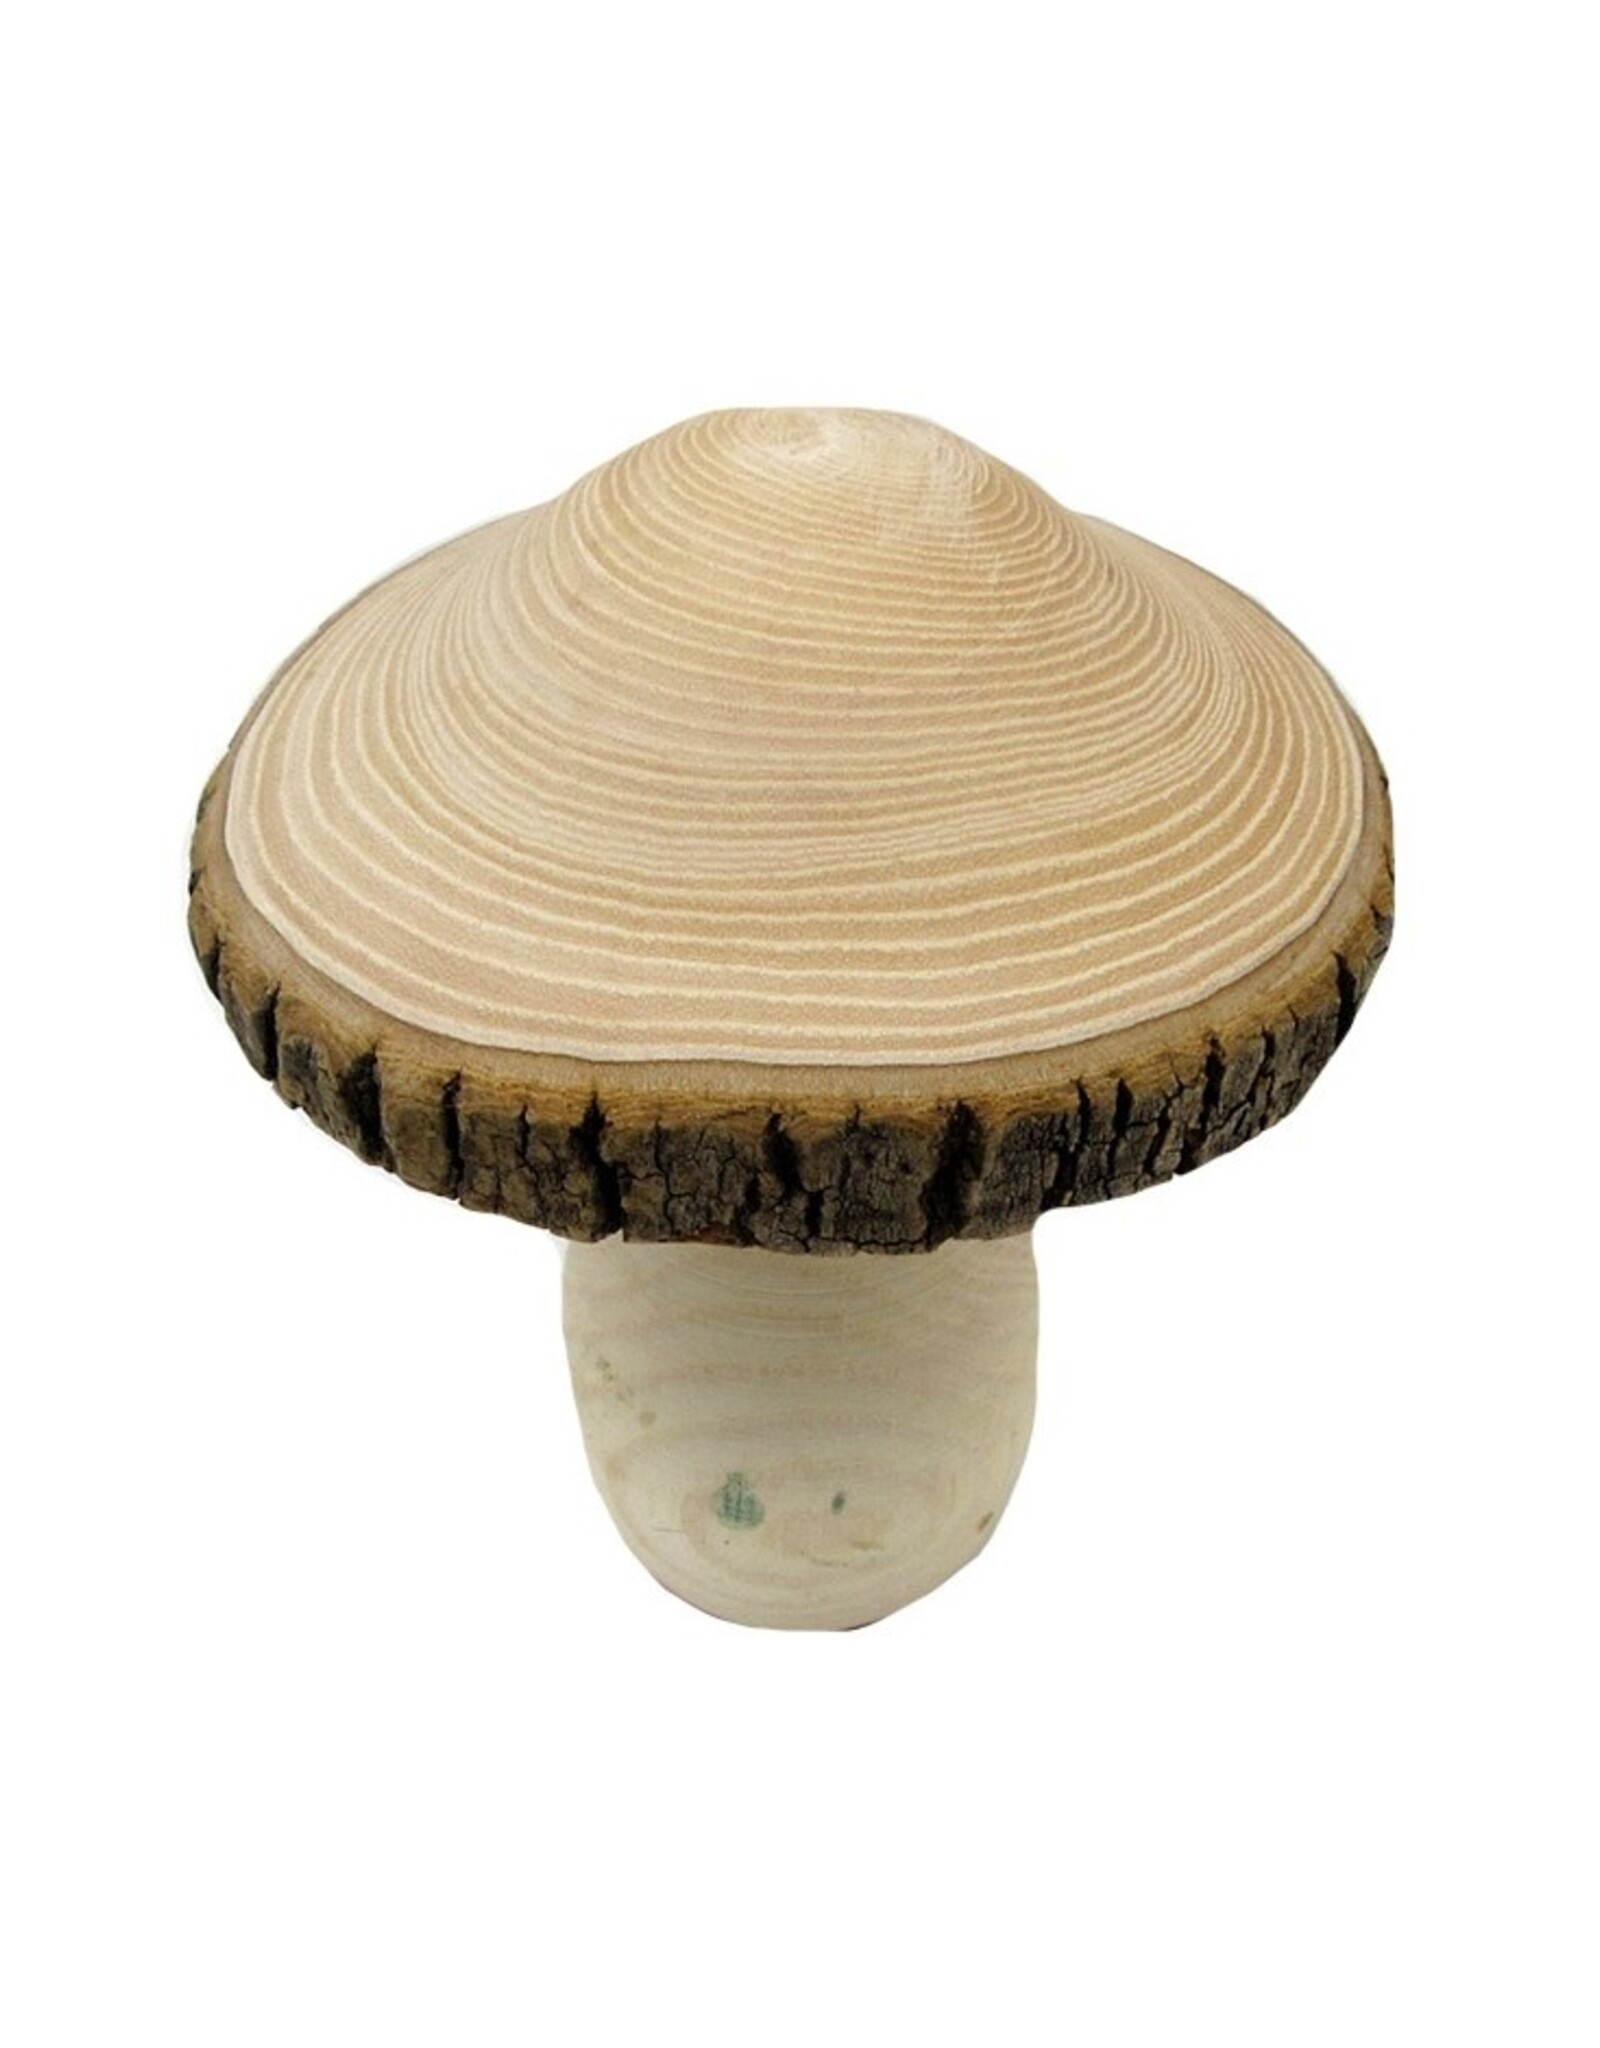 Koppers Wooden Mushroom, Large